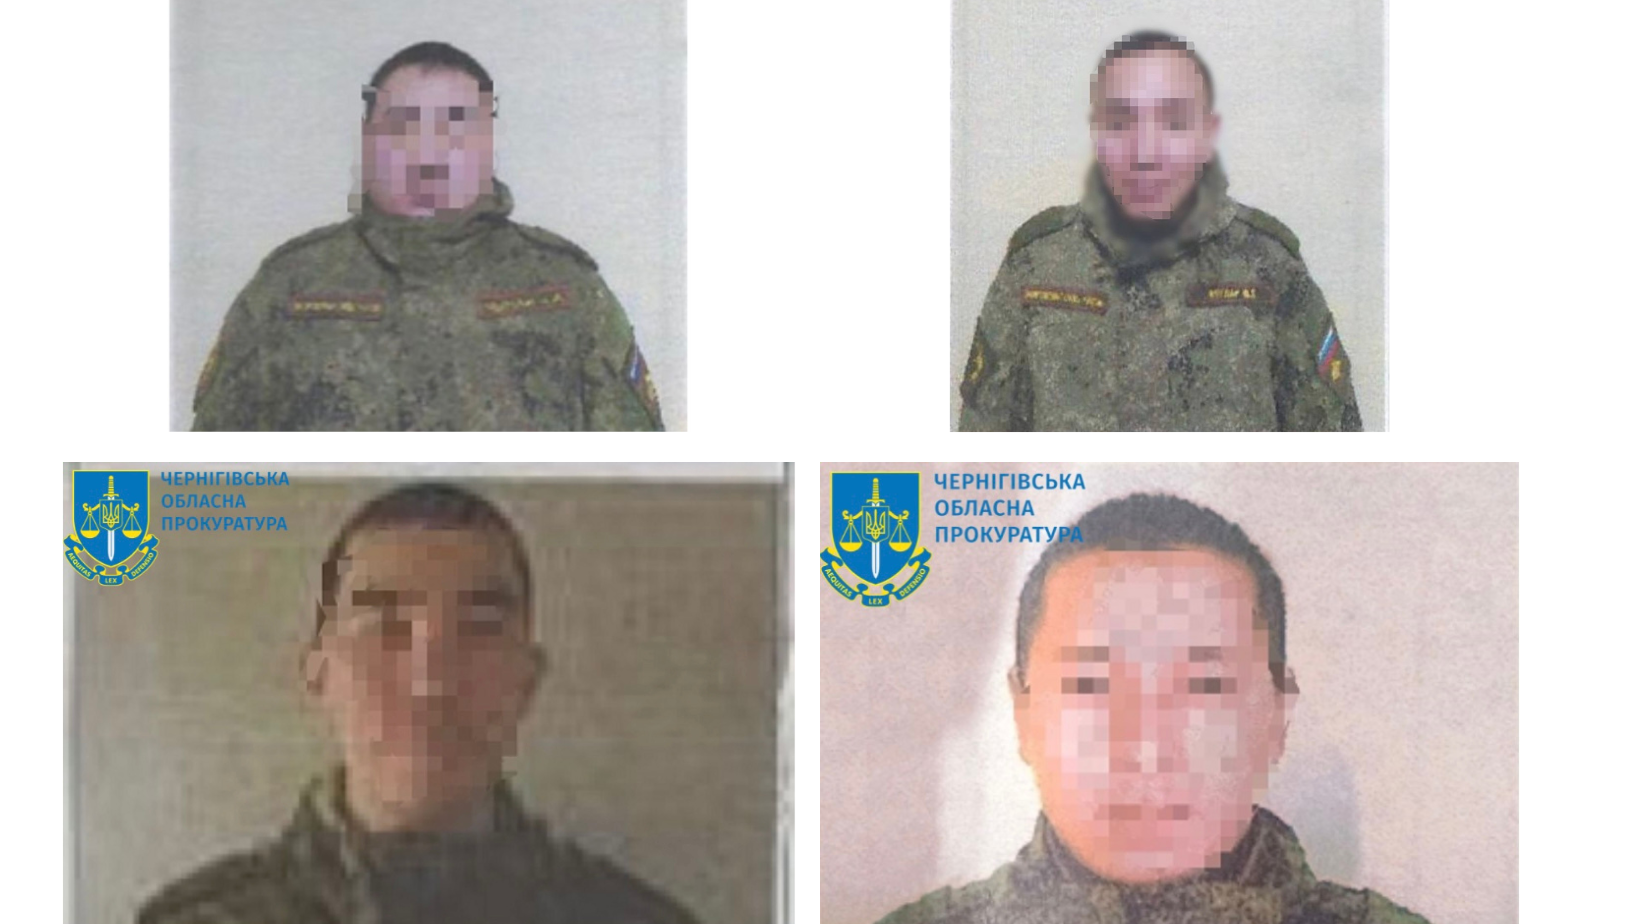 Незаконно проникли на частную территорию и мордовали украинцев: осуждены четыре оккупанта